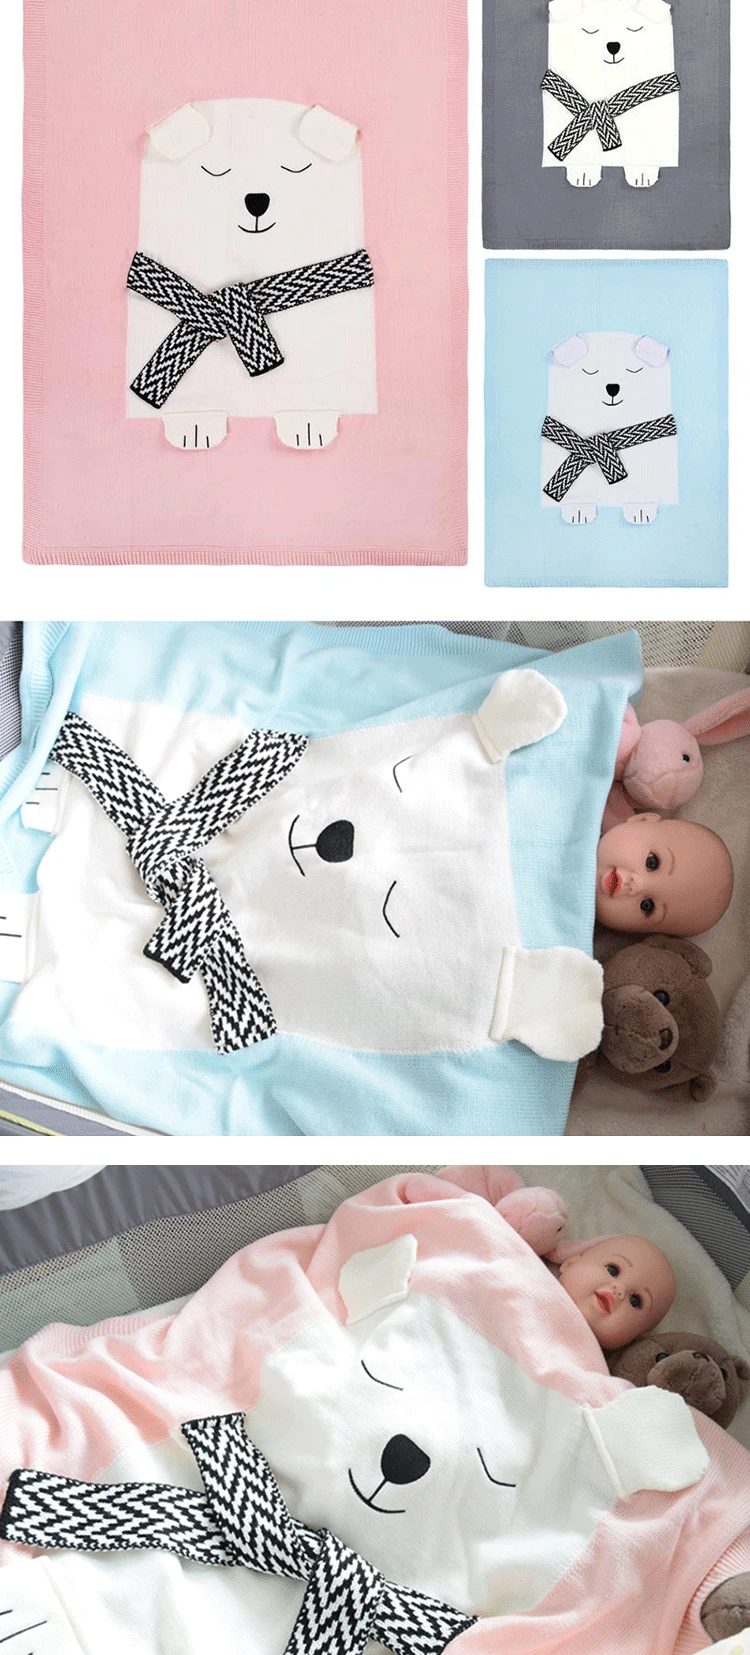 Qkoall, детское одеяло с медведем, детские мягкие подгузники для ванной, для новорожденных, муслиновые квадраты, лиса, животное, мультяшное вязаное одеяло для детей